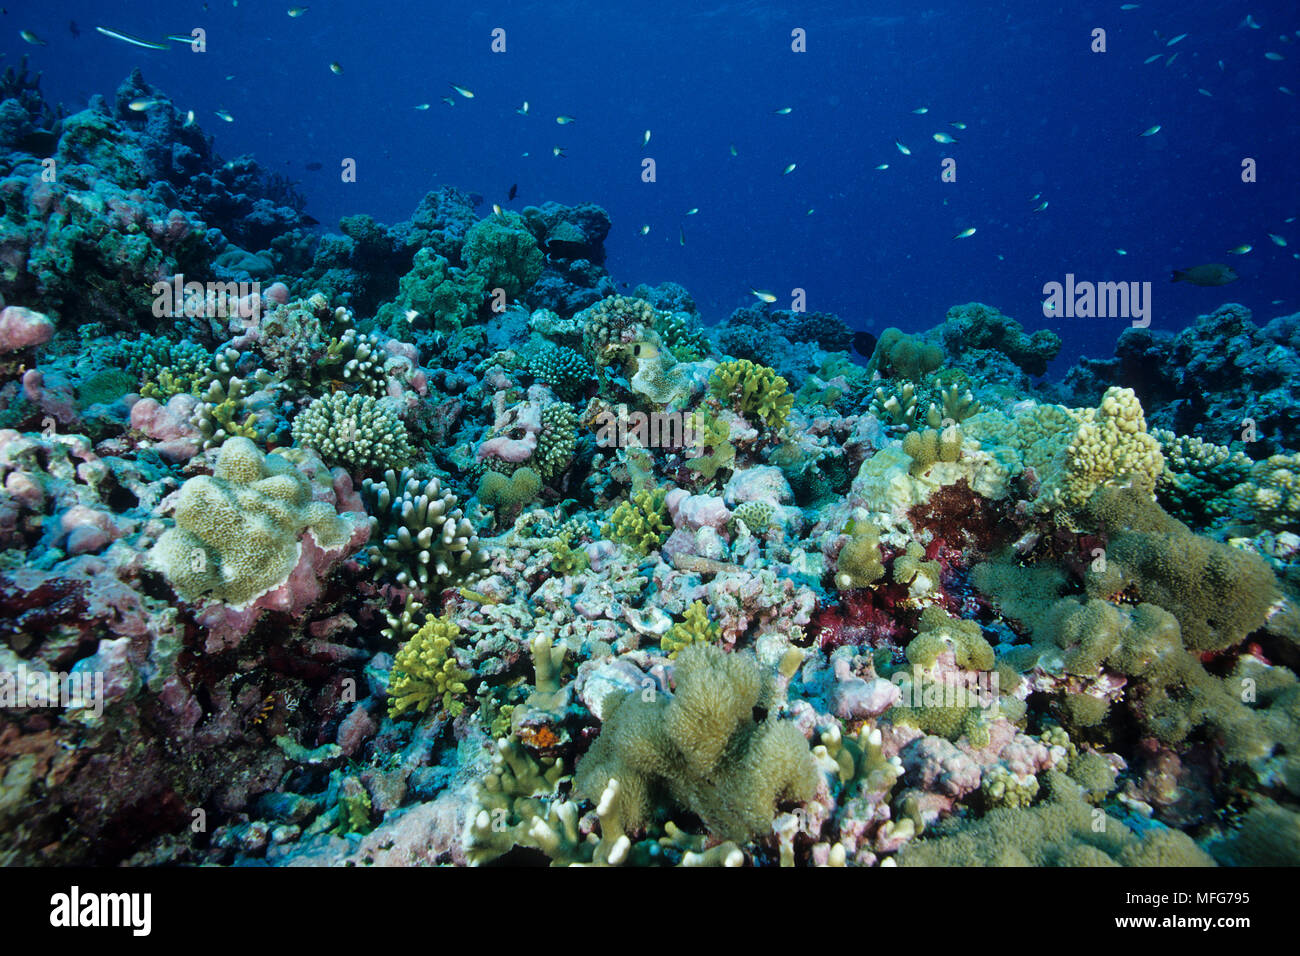 Il recupero di barriera corallina con segni di danneggiamento delle barriere coralline e coralli sani, Aldabra Atoll, patrimonio mondiale naturale, Seychelles, Oceano Indiano Data: 24 Foto Stock